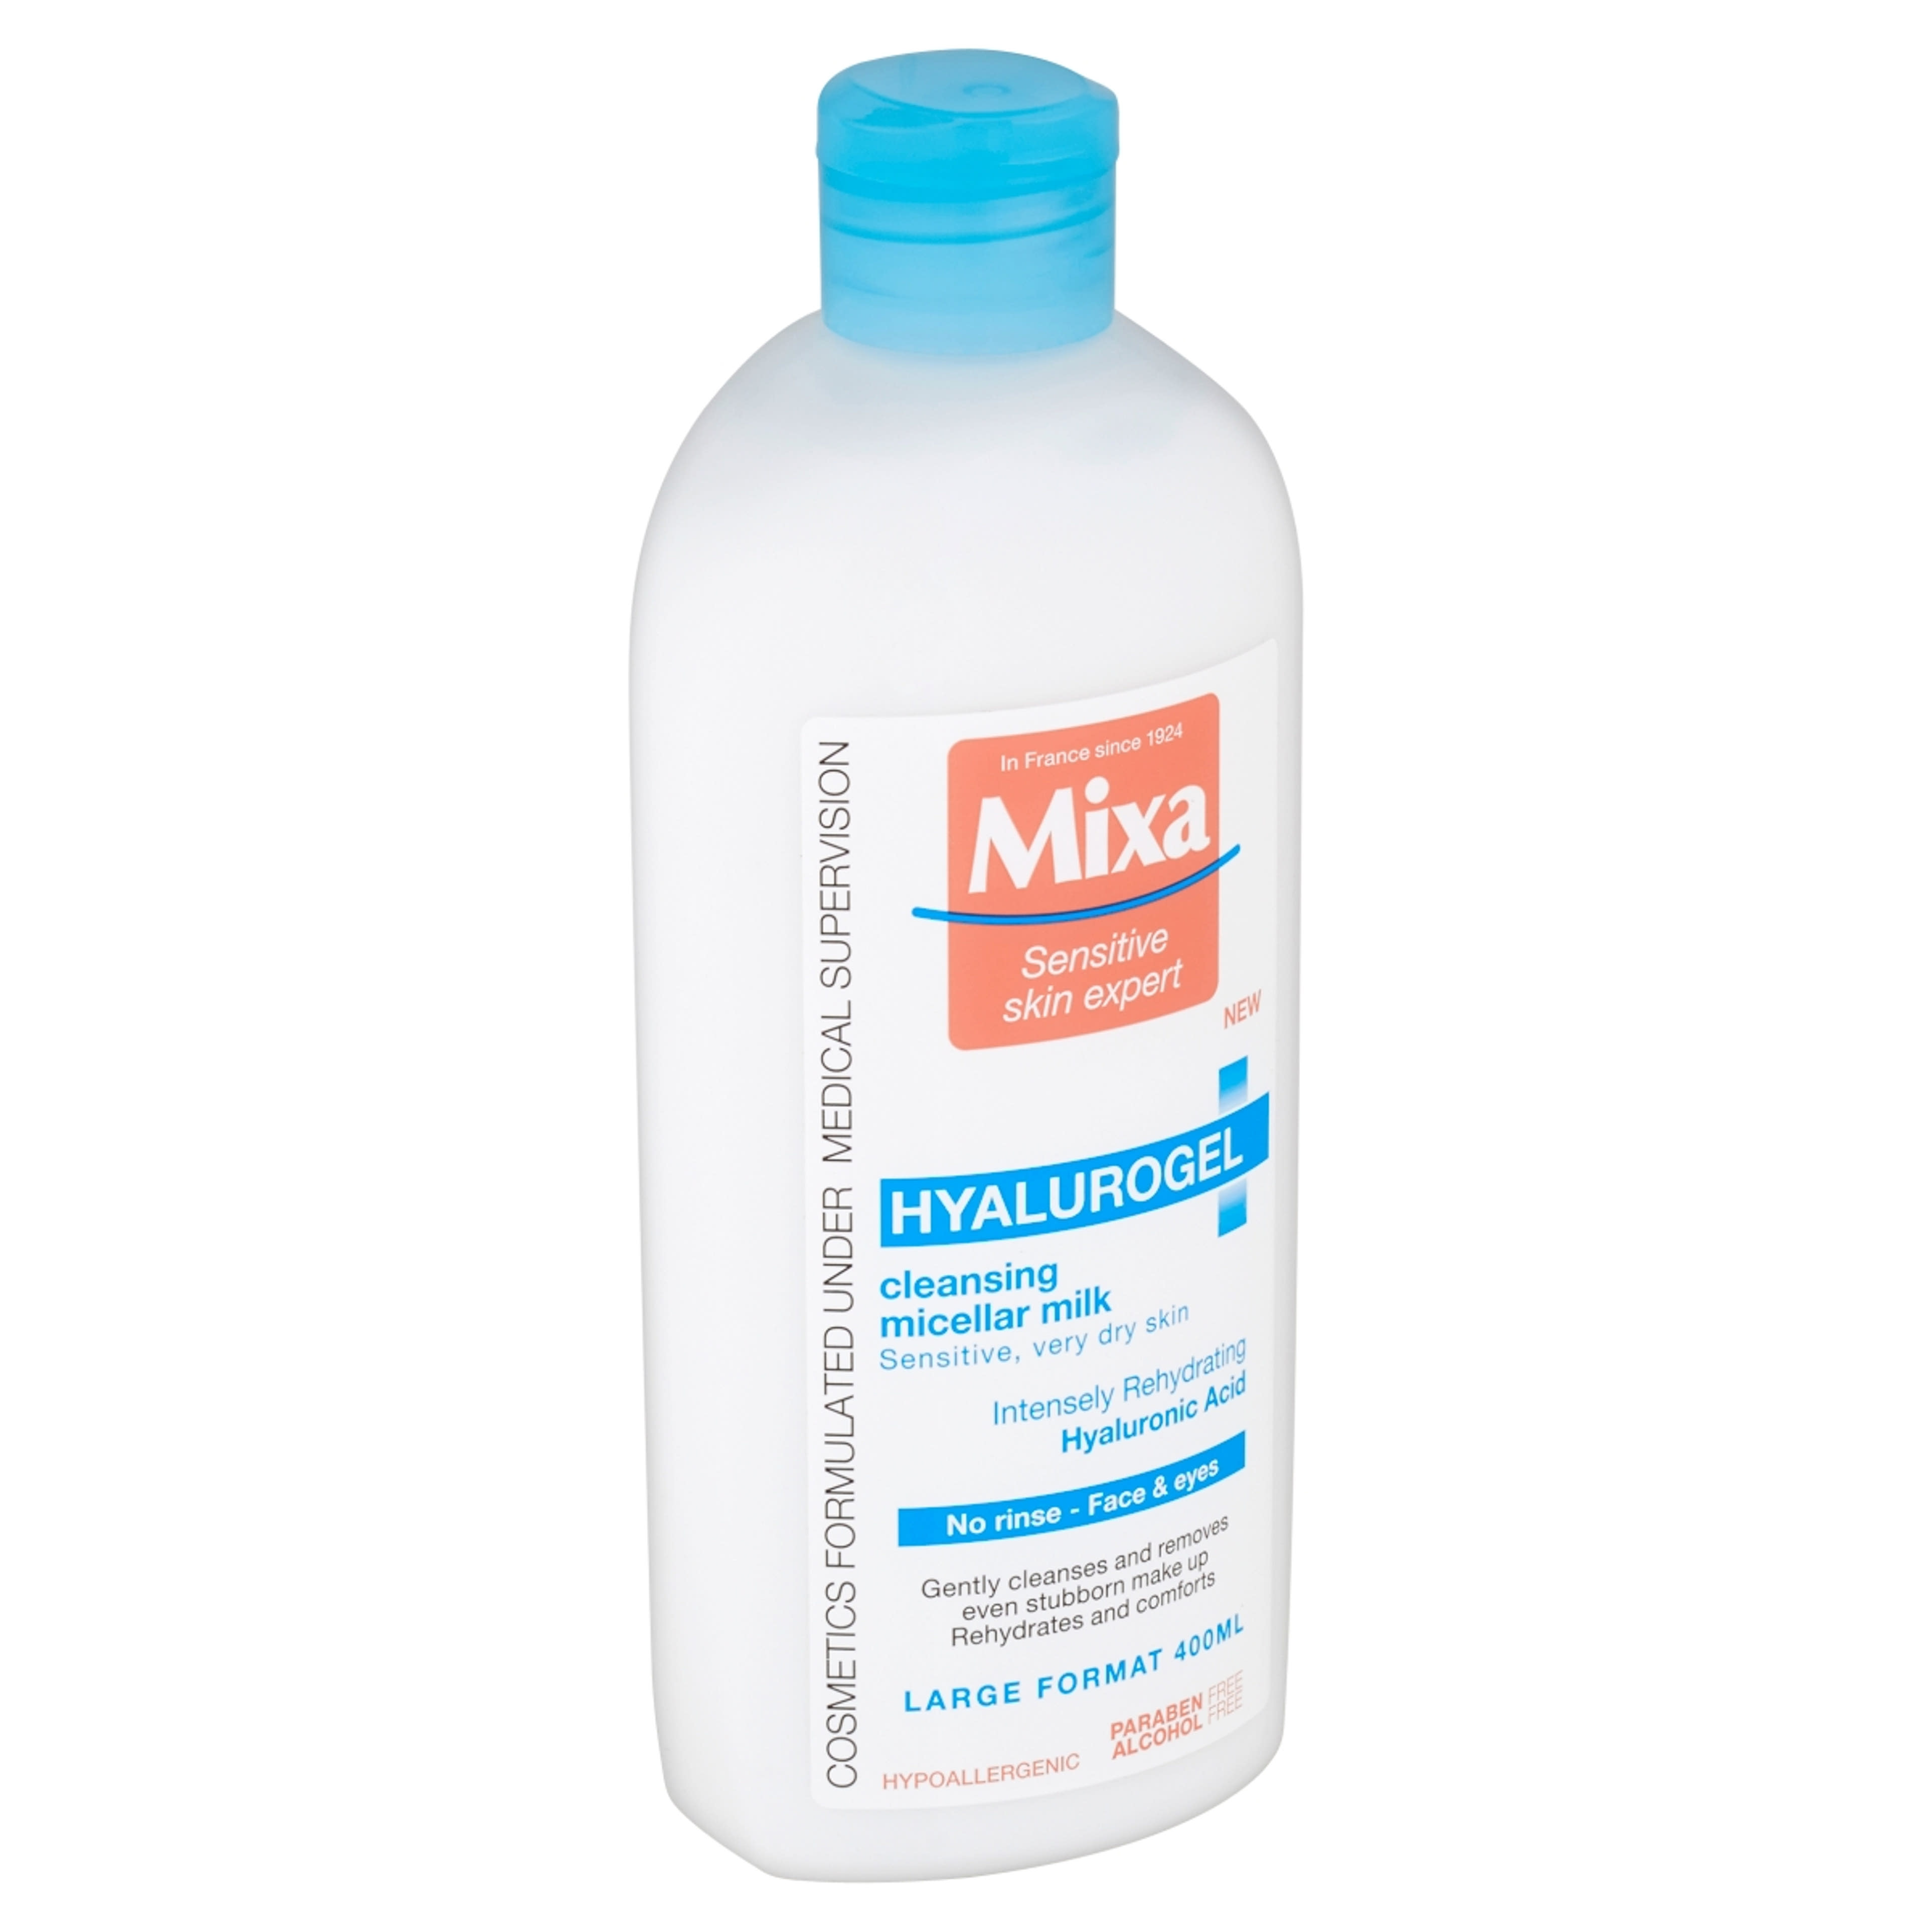 Mixa hyalurogel micellás tej - 400 ml-2